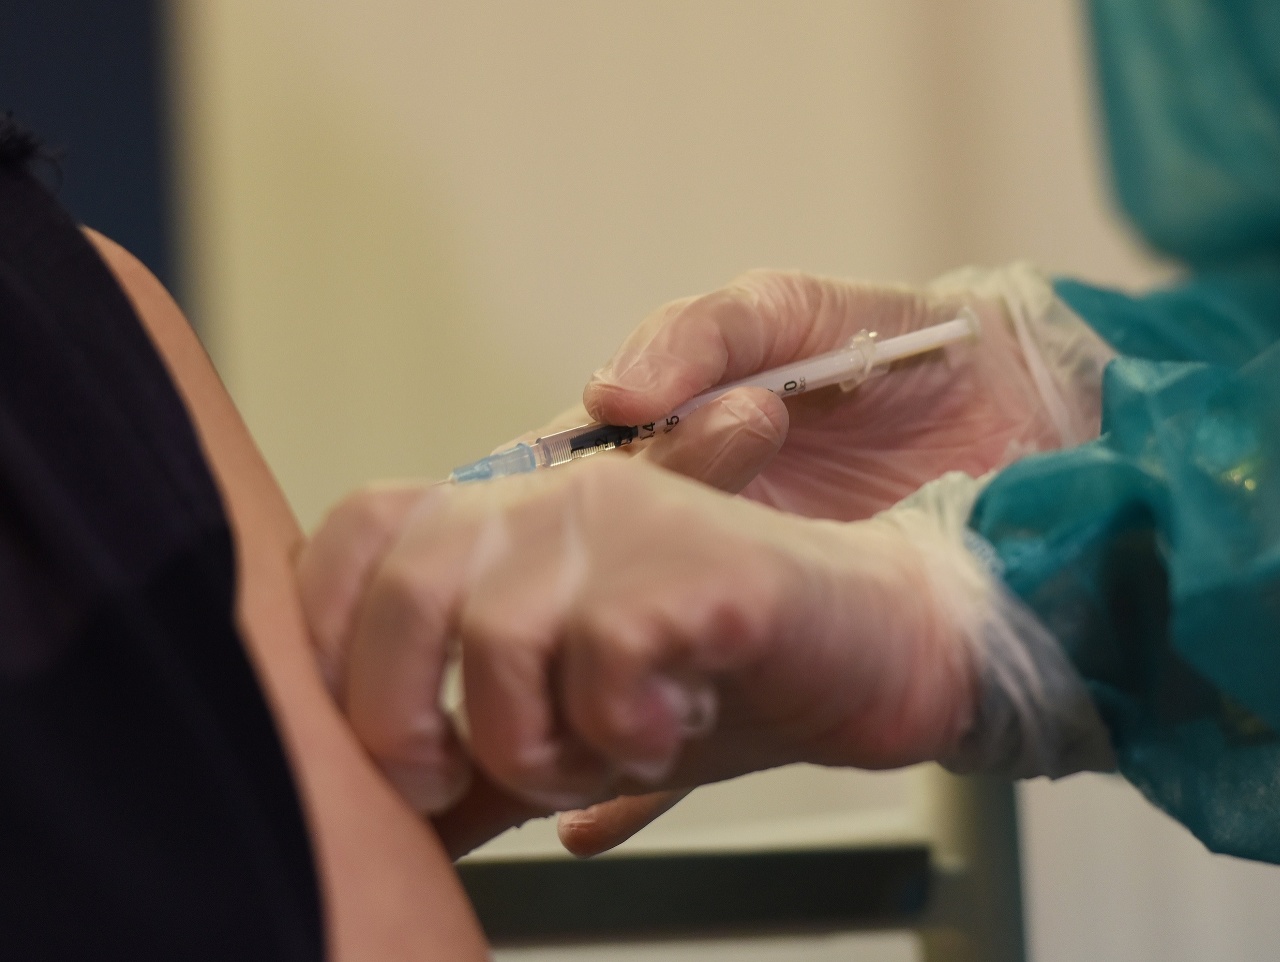 Očkovanie proti koronavírusu na Slovensku